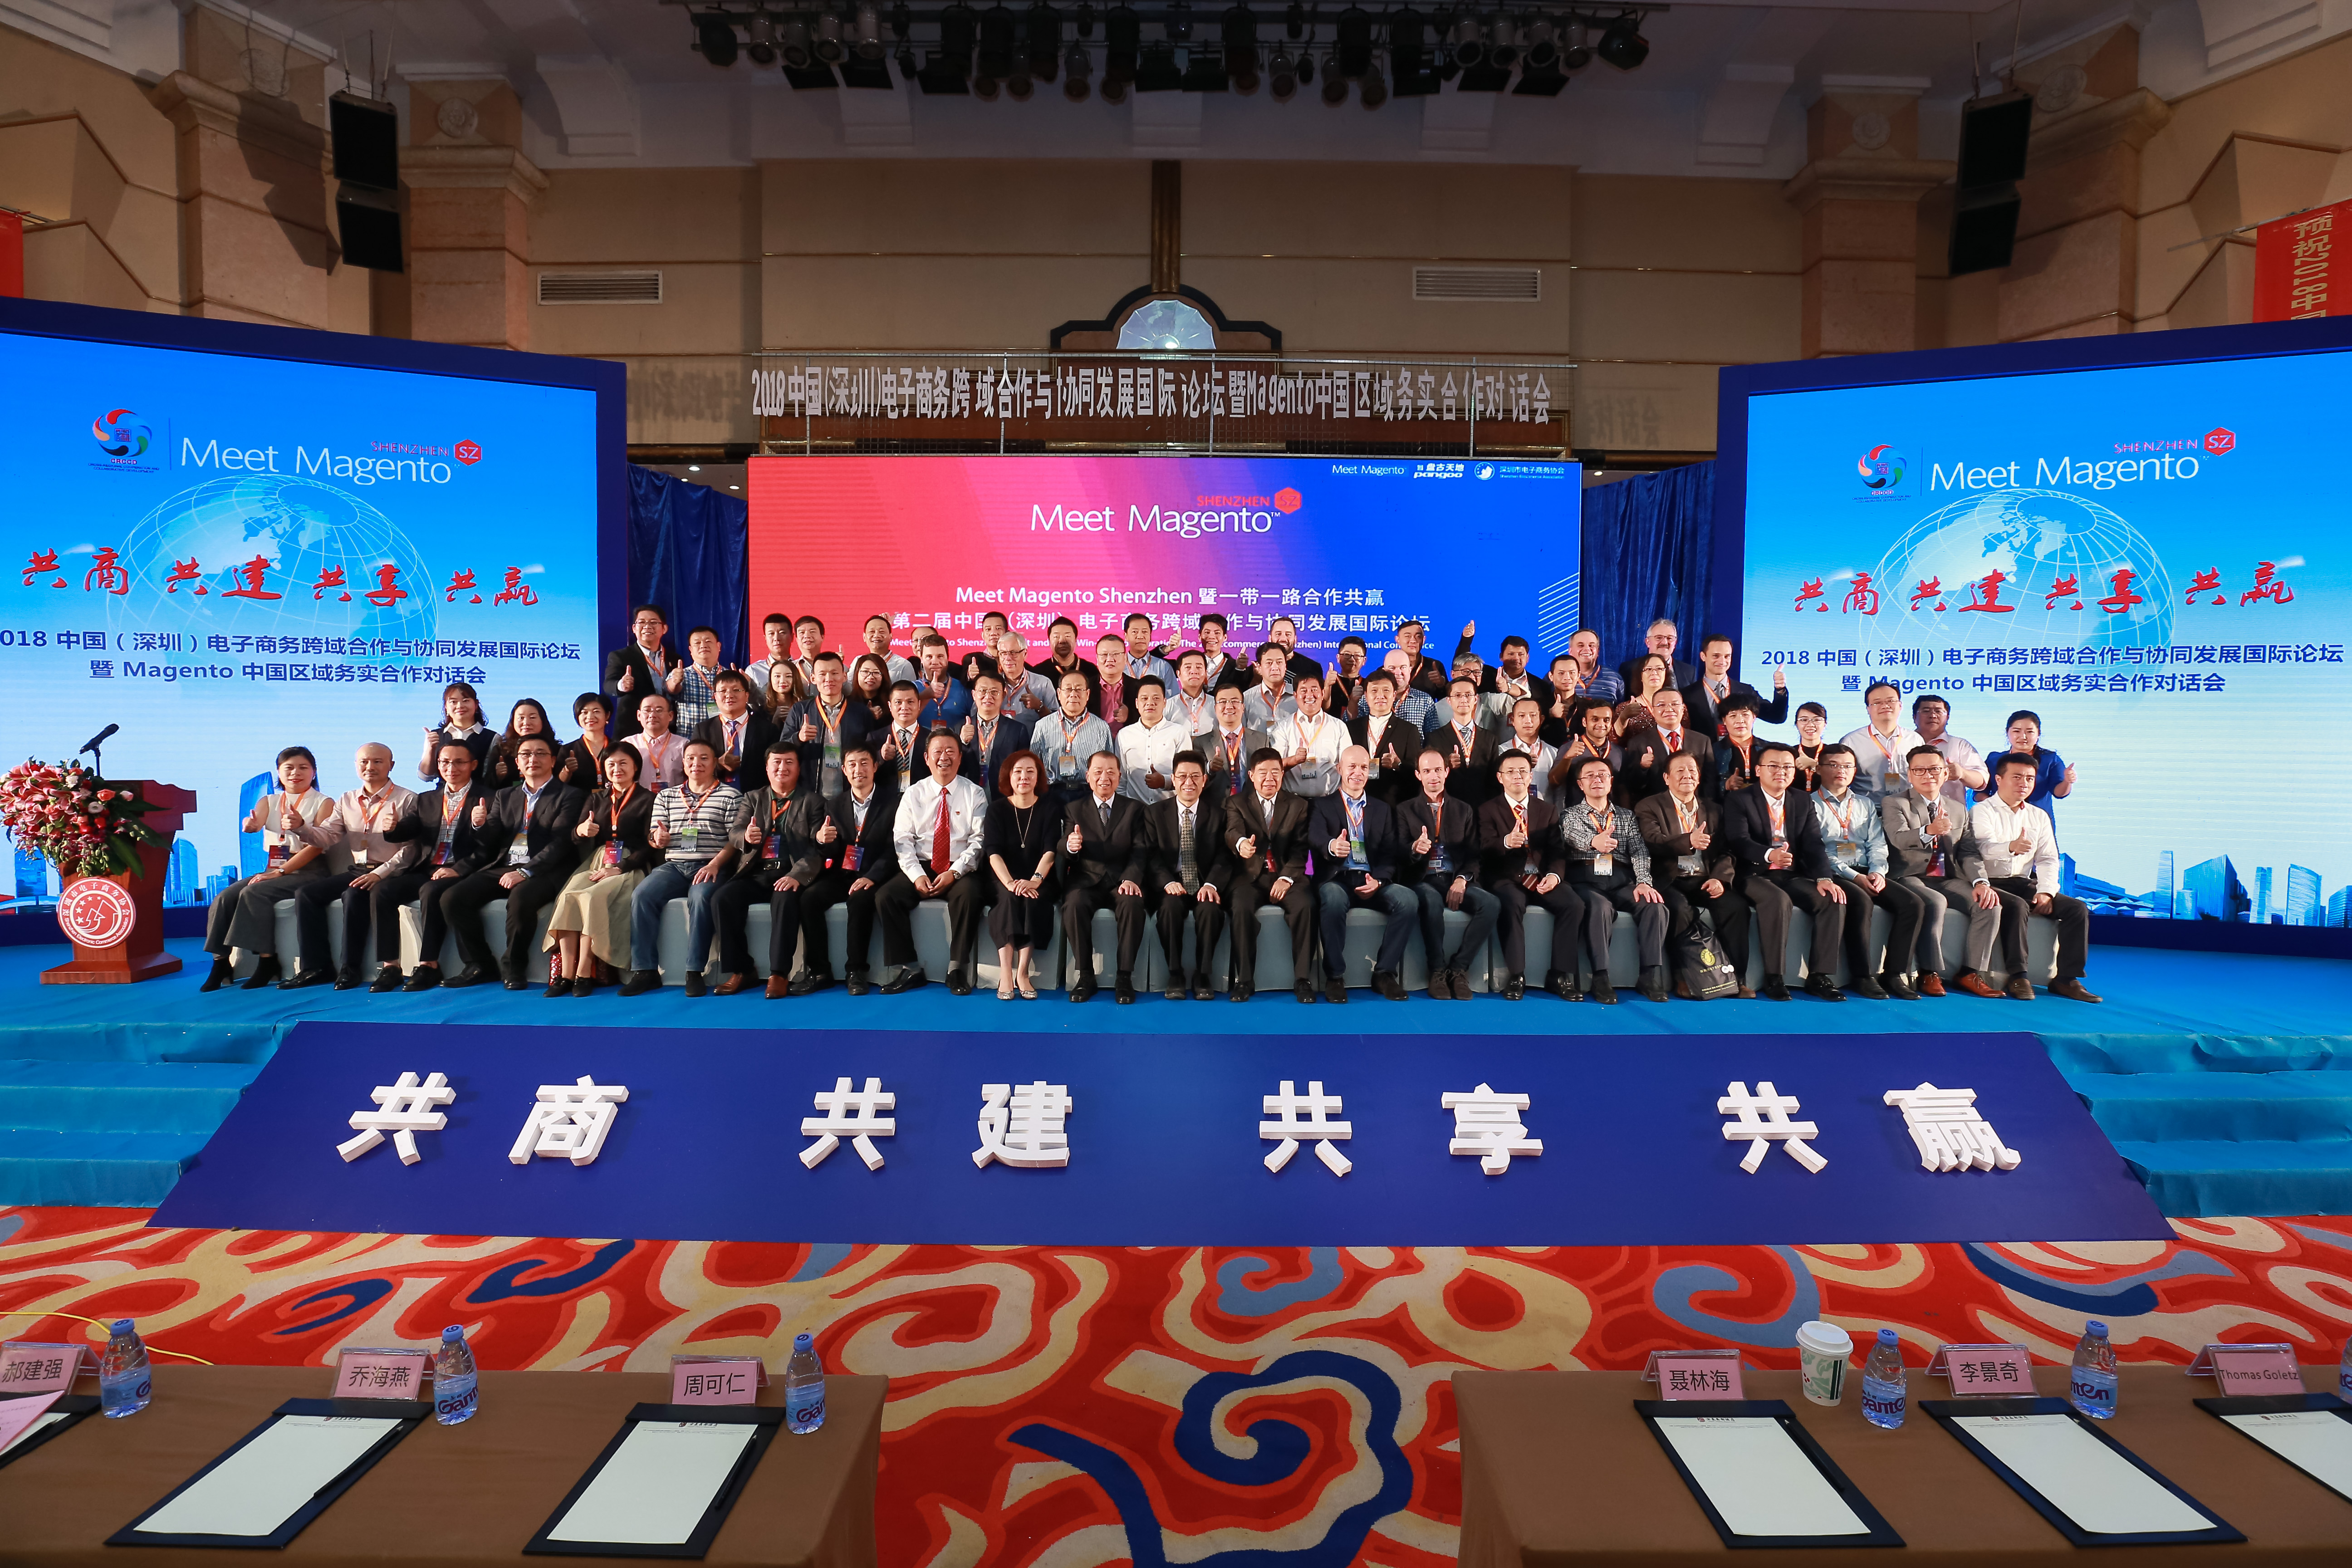 2019年中国（深圳）电子商务跨域合作与协同发展国际论坛暨跨境电商创业者成长和企业发展峰会成功召开